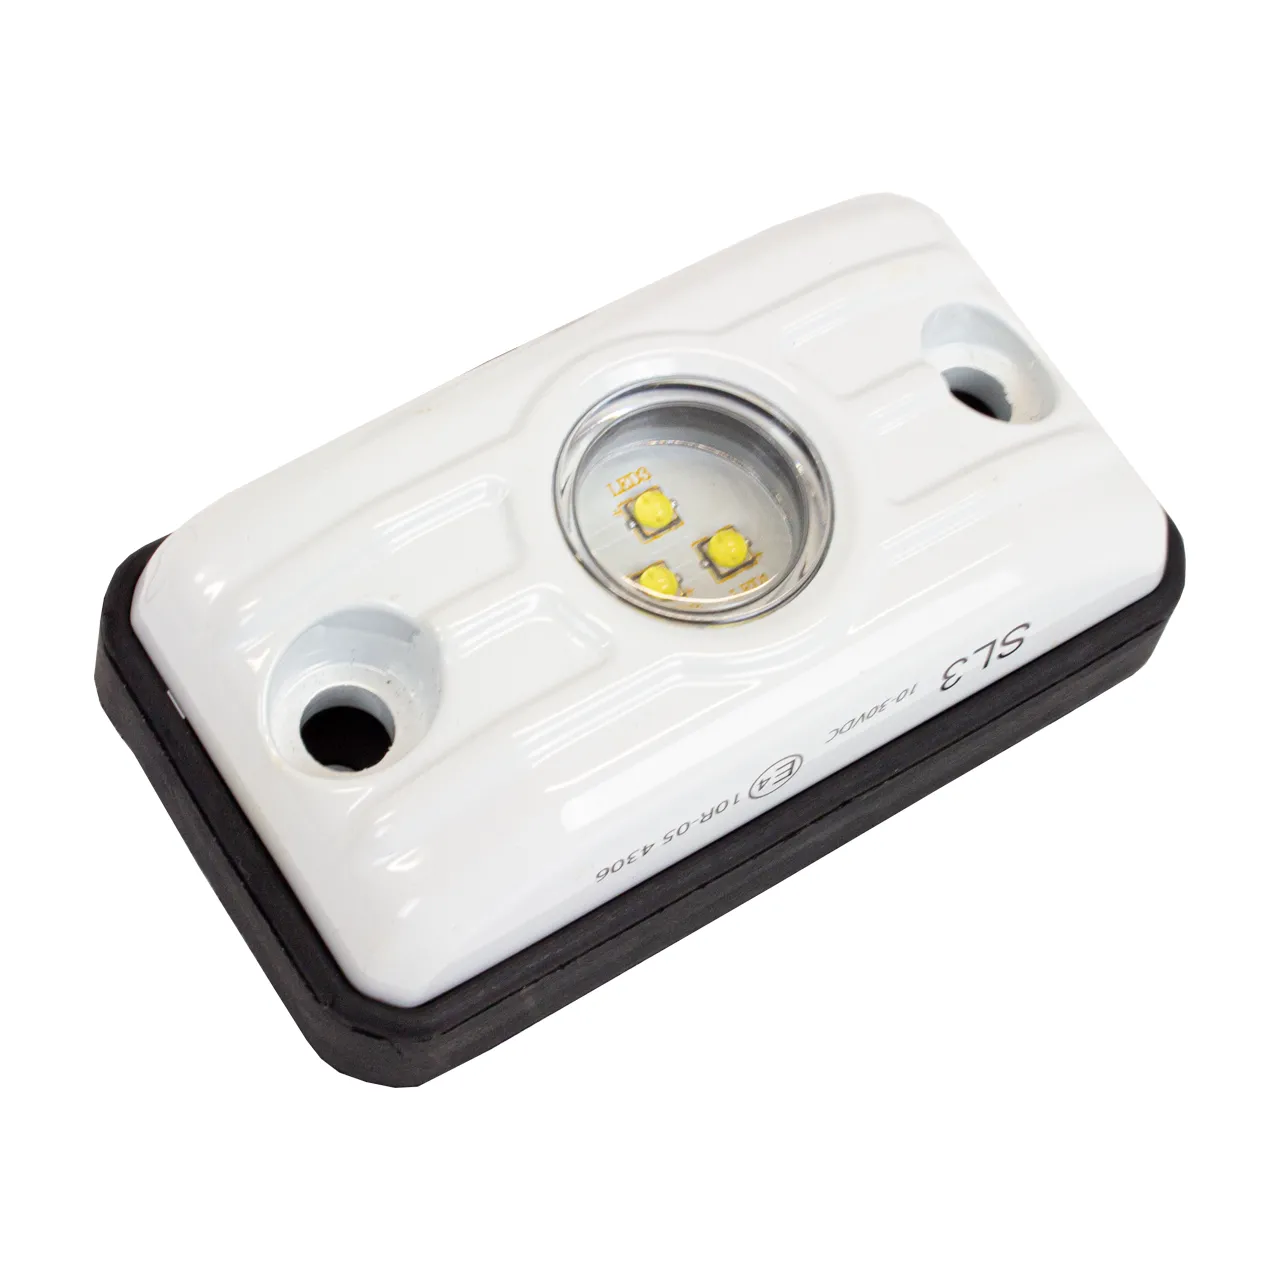 EW3000 LED-Suchscheinwerfer kaufen, Online Shop, 911Services GmbH